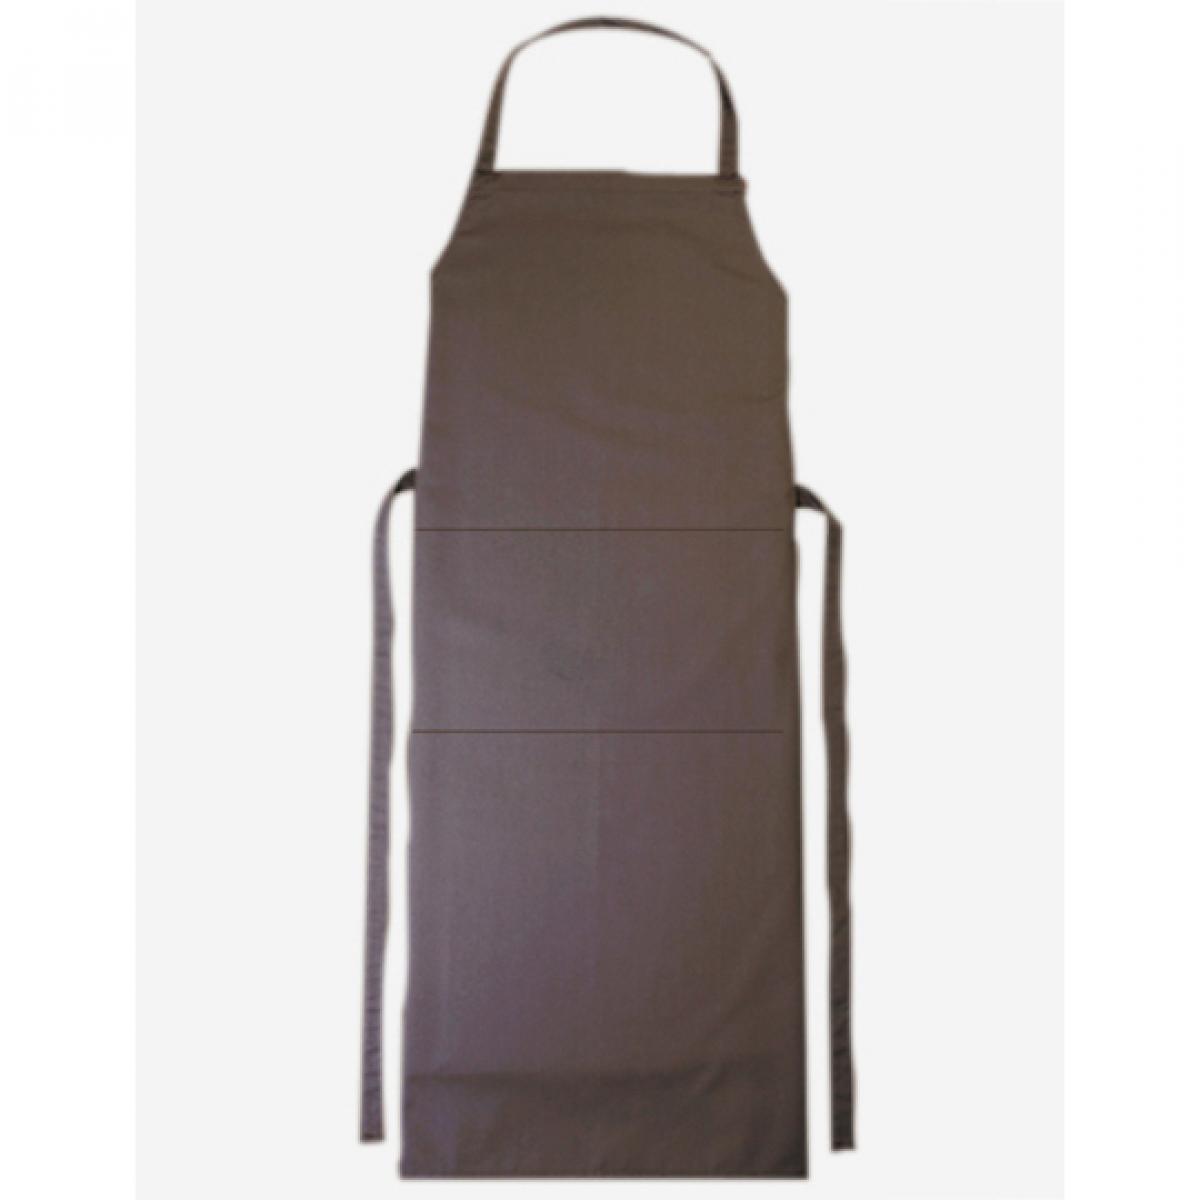 Hersteller: CG Workwear Herstellernummer: 01146-01 Artikelbezeichnung: Latzschürze Verona Classic Bag 90 x 75 cm Farbe: Taupe